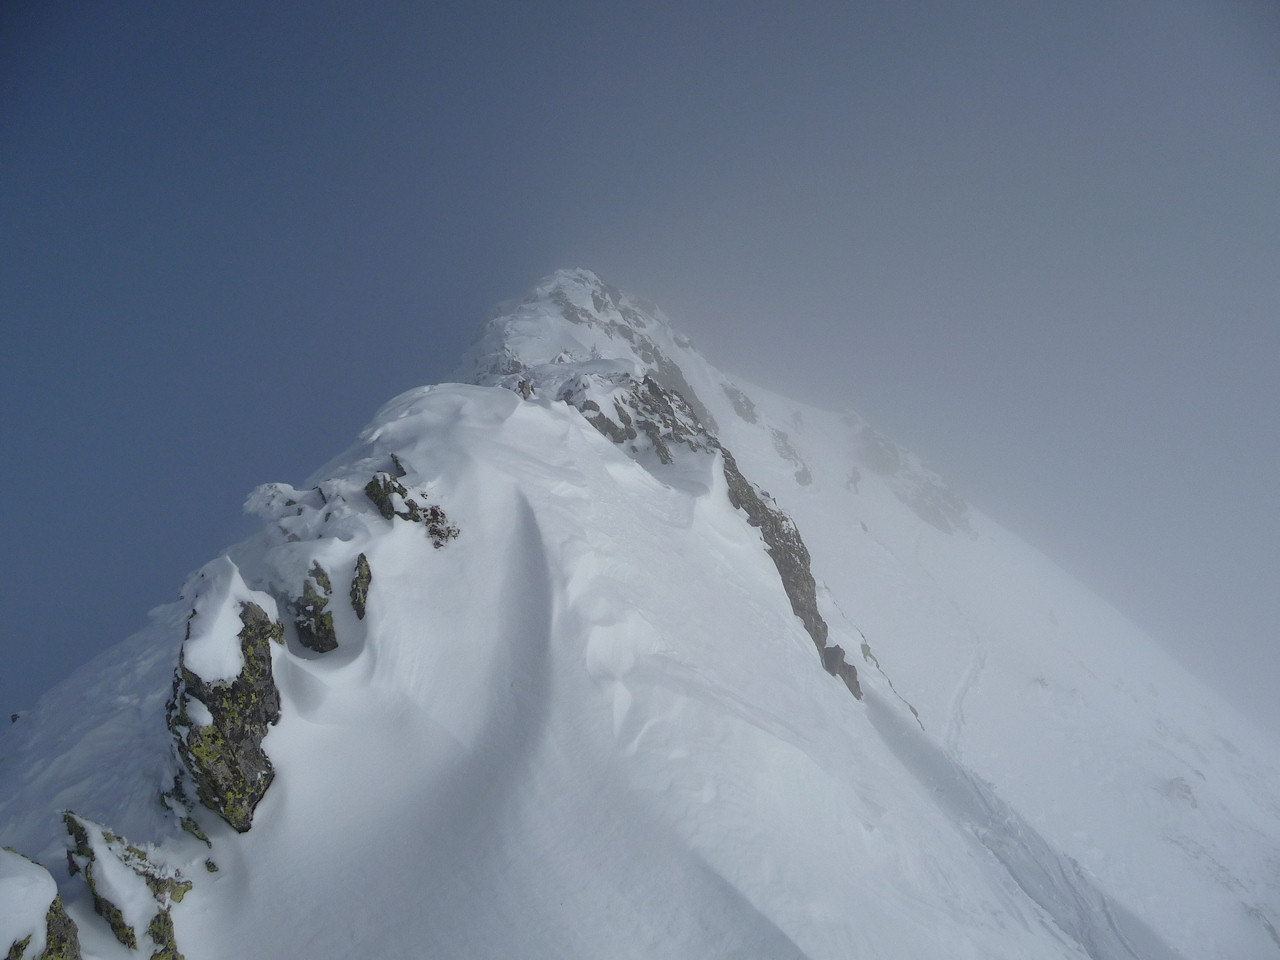 A l'approche du sommet : Sous le sommet, dans la brume 2 randonneurs de Tarentaise se battent avec la dernière pente